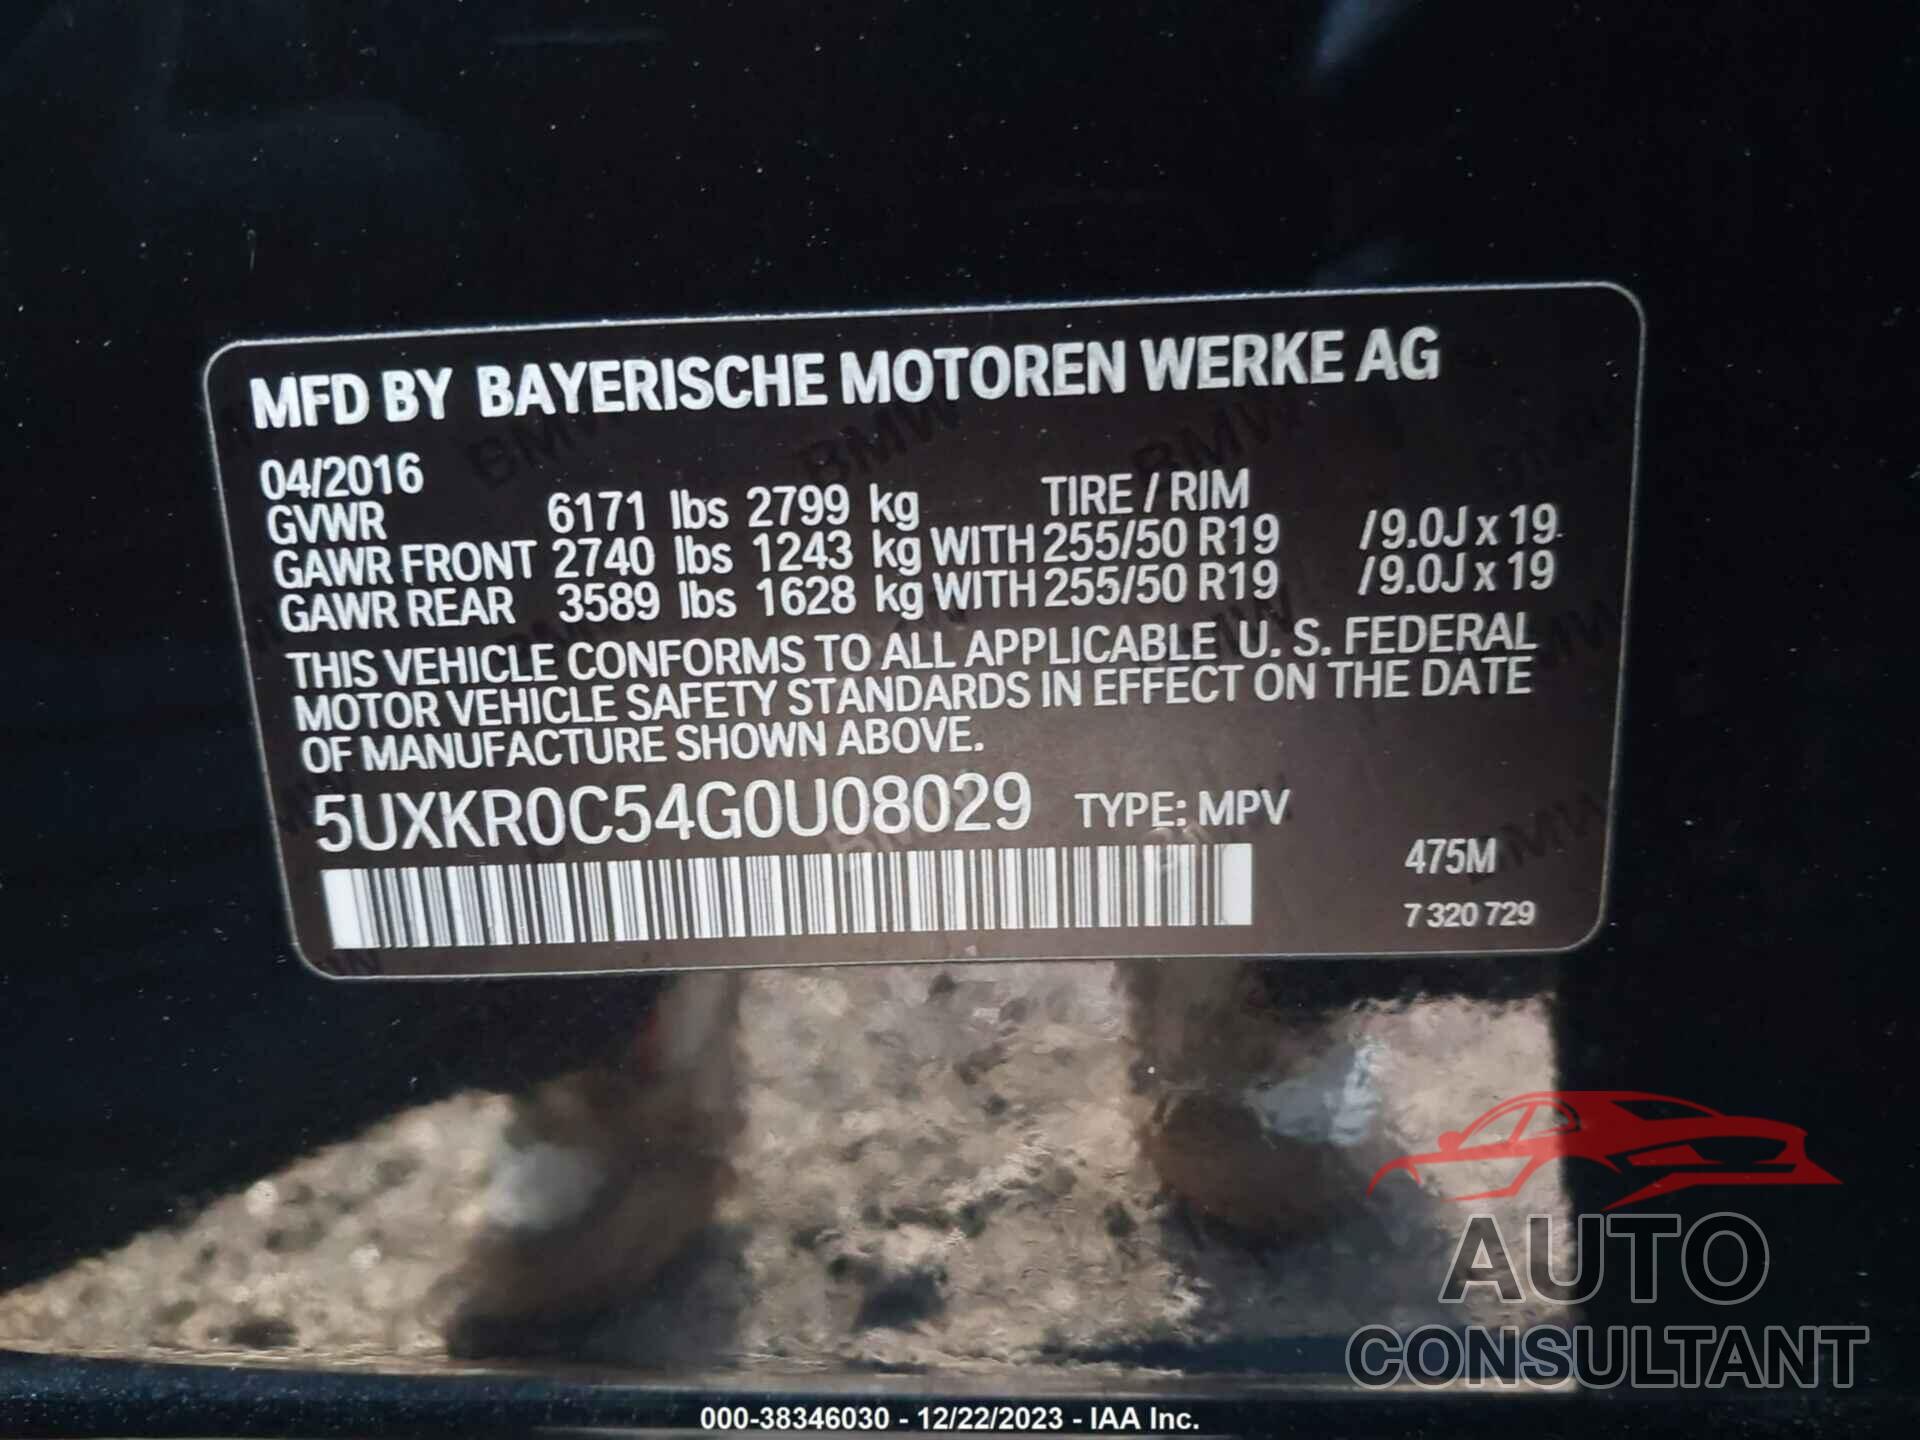 BMW X5 2016 - 5UXKR0C54G0U08029